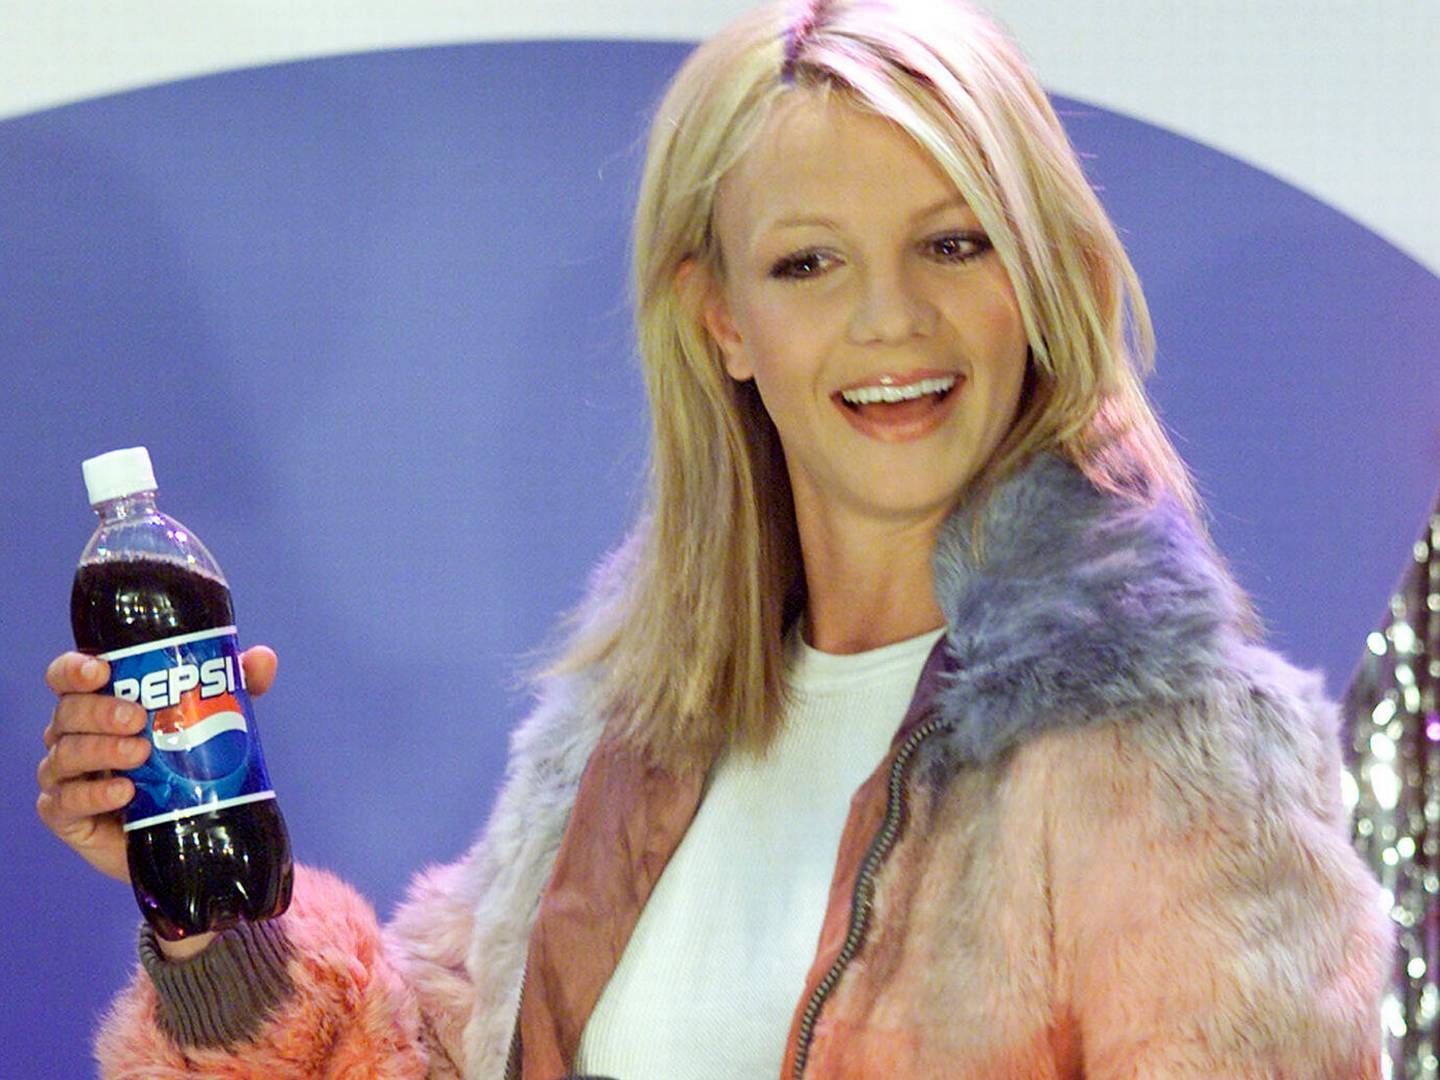 Popstjernen Britney Spears er en af de berømtheder, der var bud efter i 00'ernes marketingkampagner fra bl.a. Pepsi, skriver May Kjærsgaard, der er selvstændig digital strateg. | Foto: Jeff Christensen/Reuters/Ritzau Scanpix